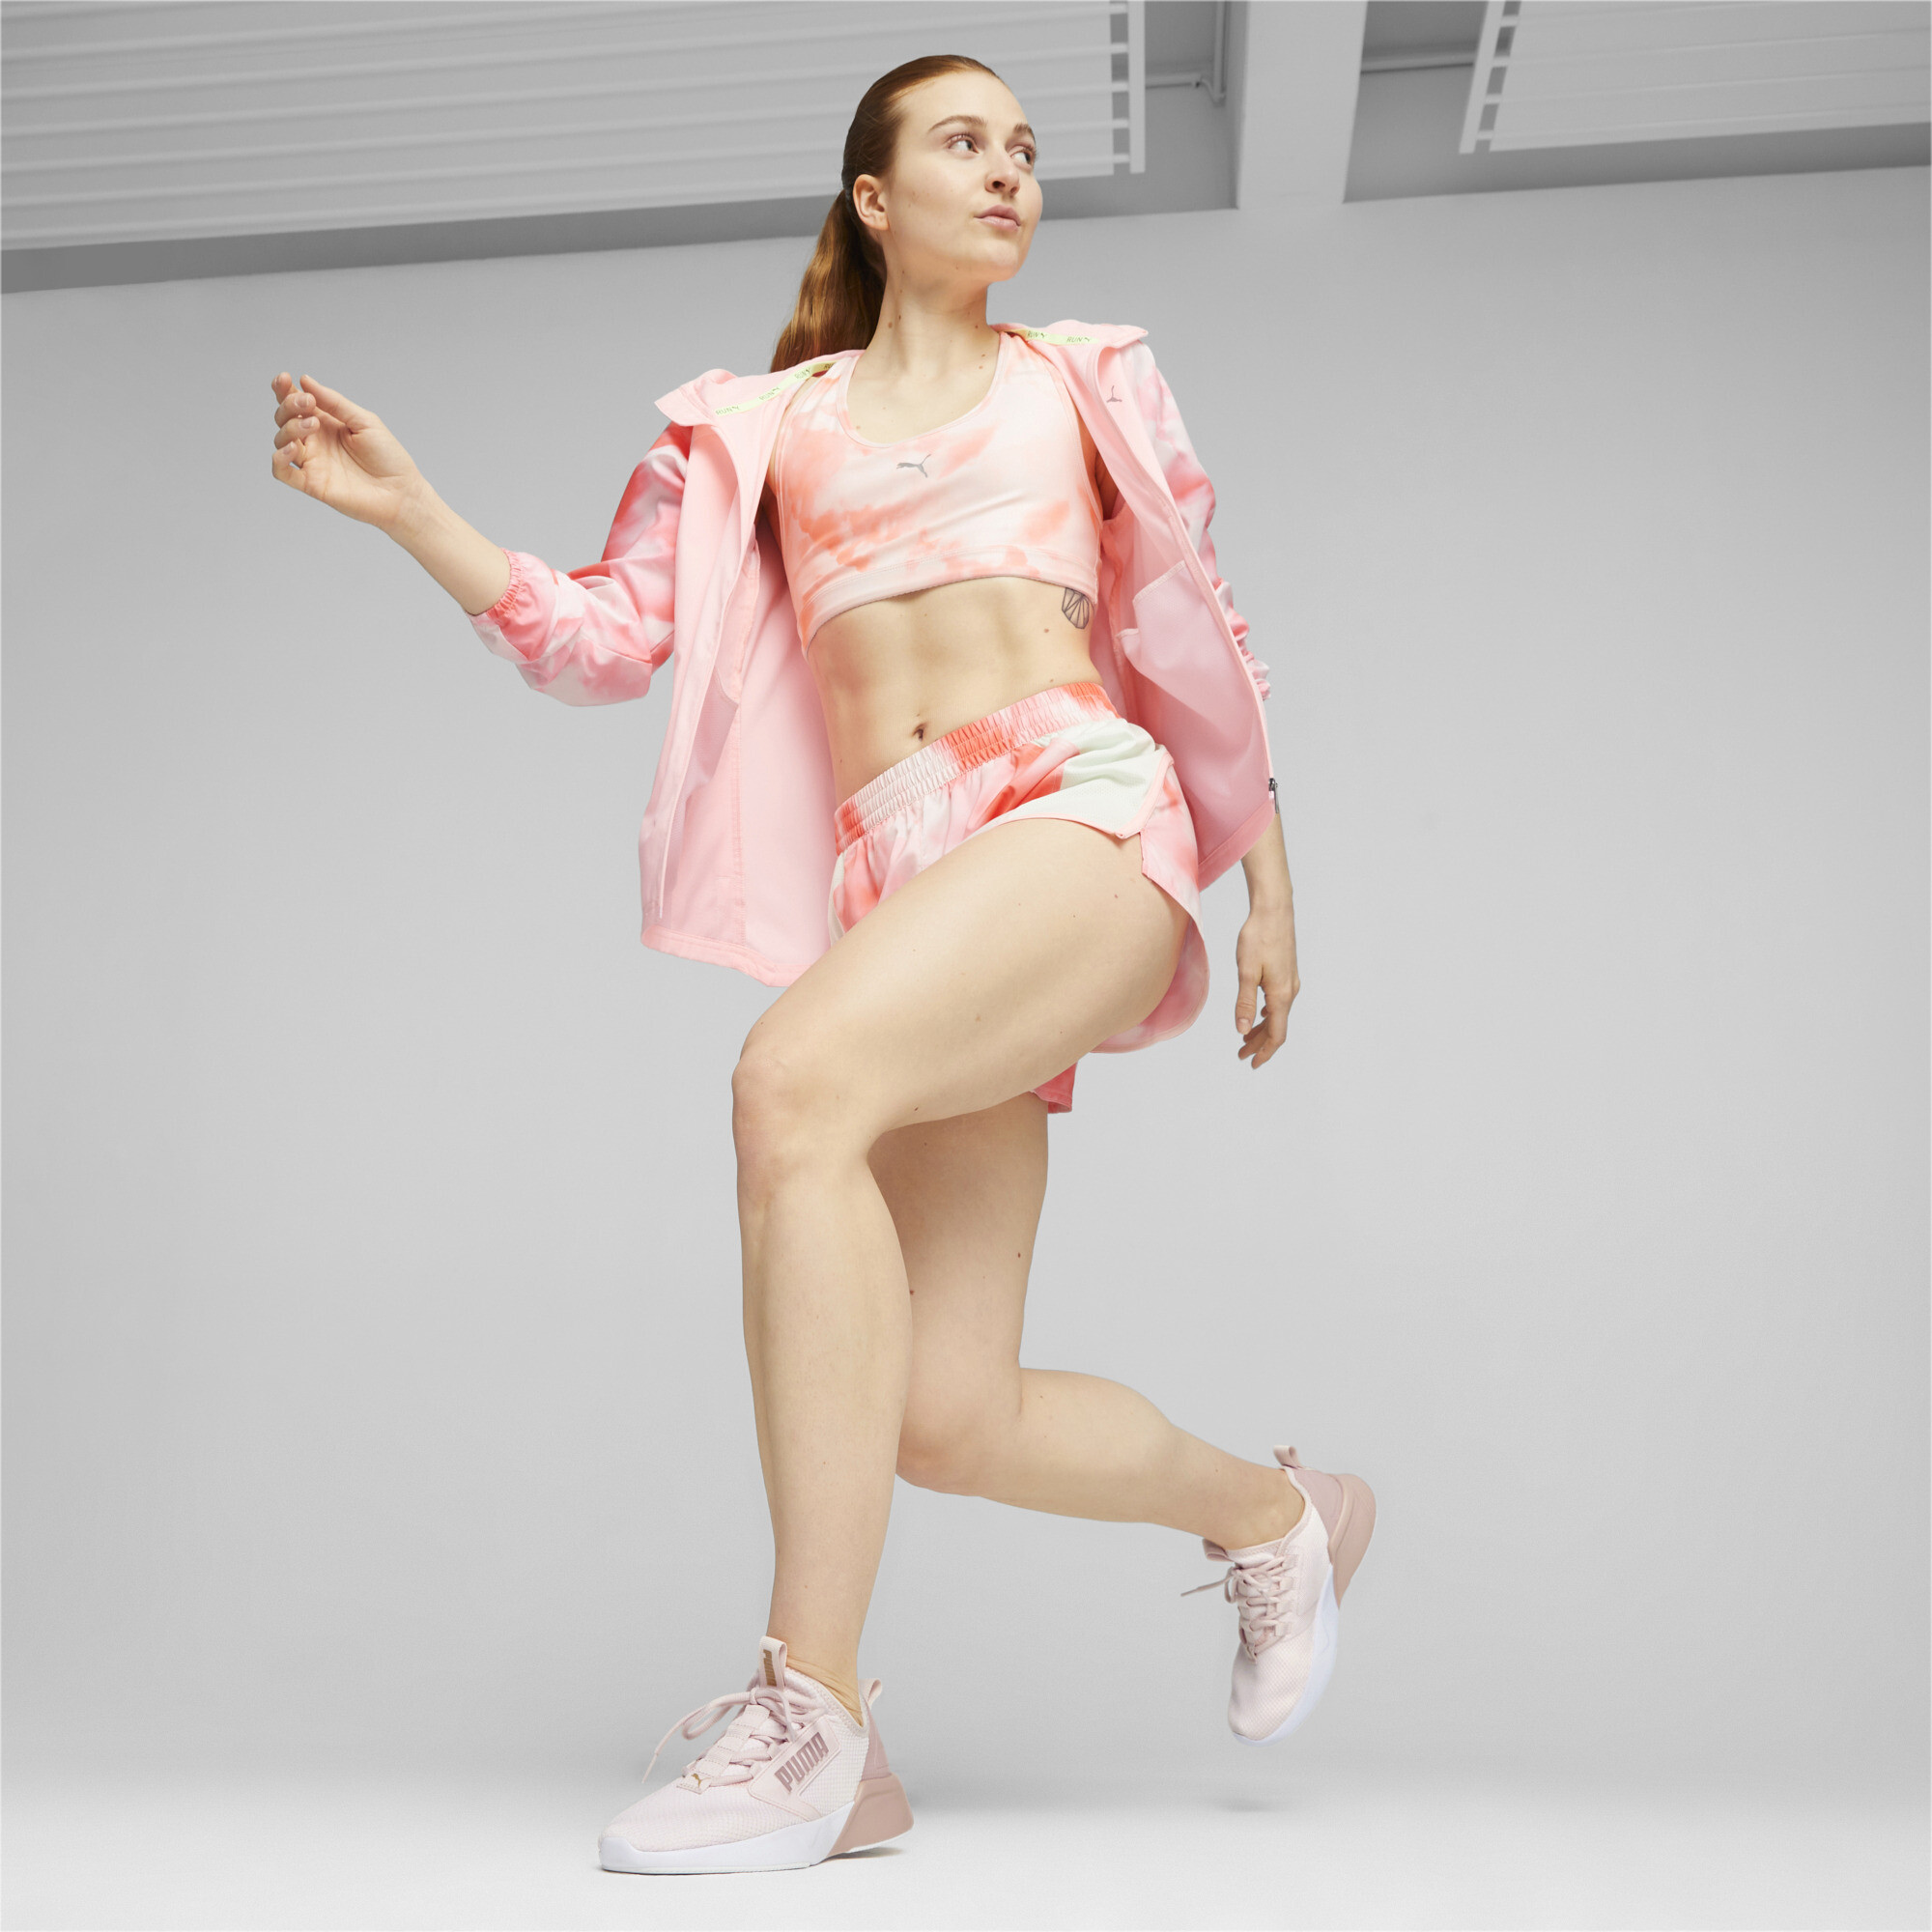 Women's Puma Retaliate Mesh's Running Shoes, Pink, Size 37, Shoes